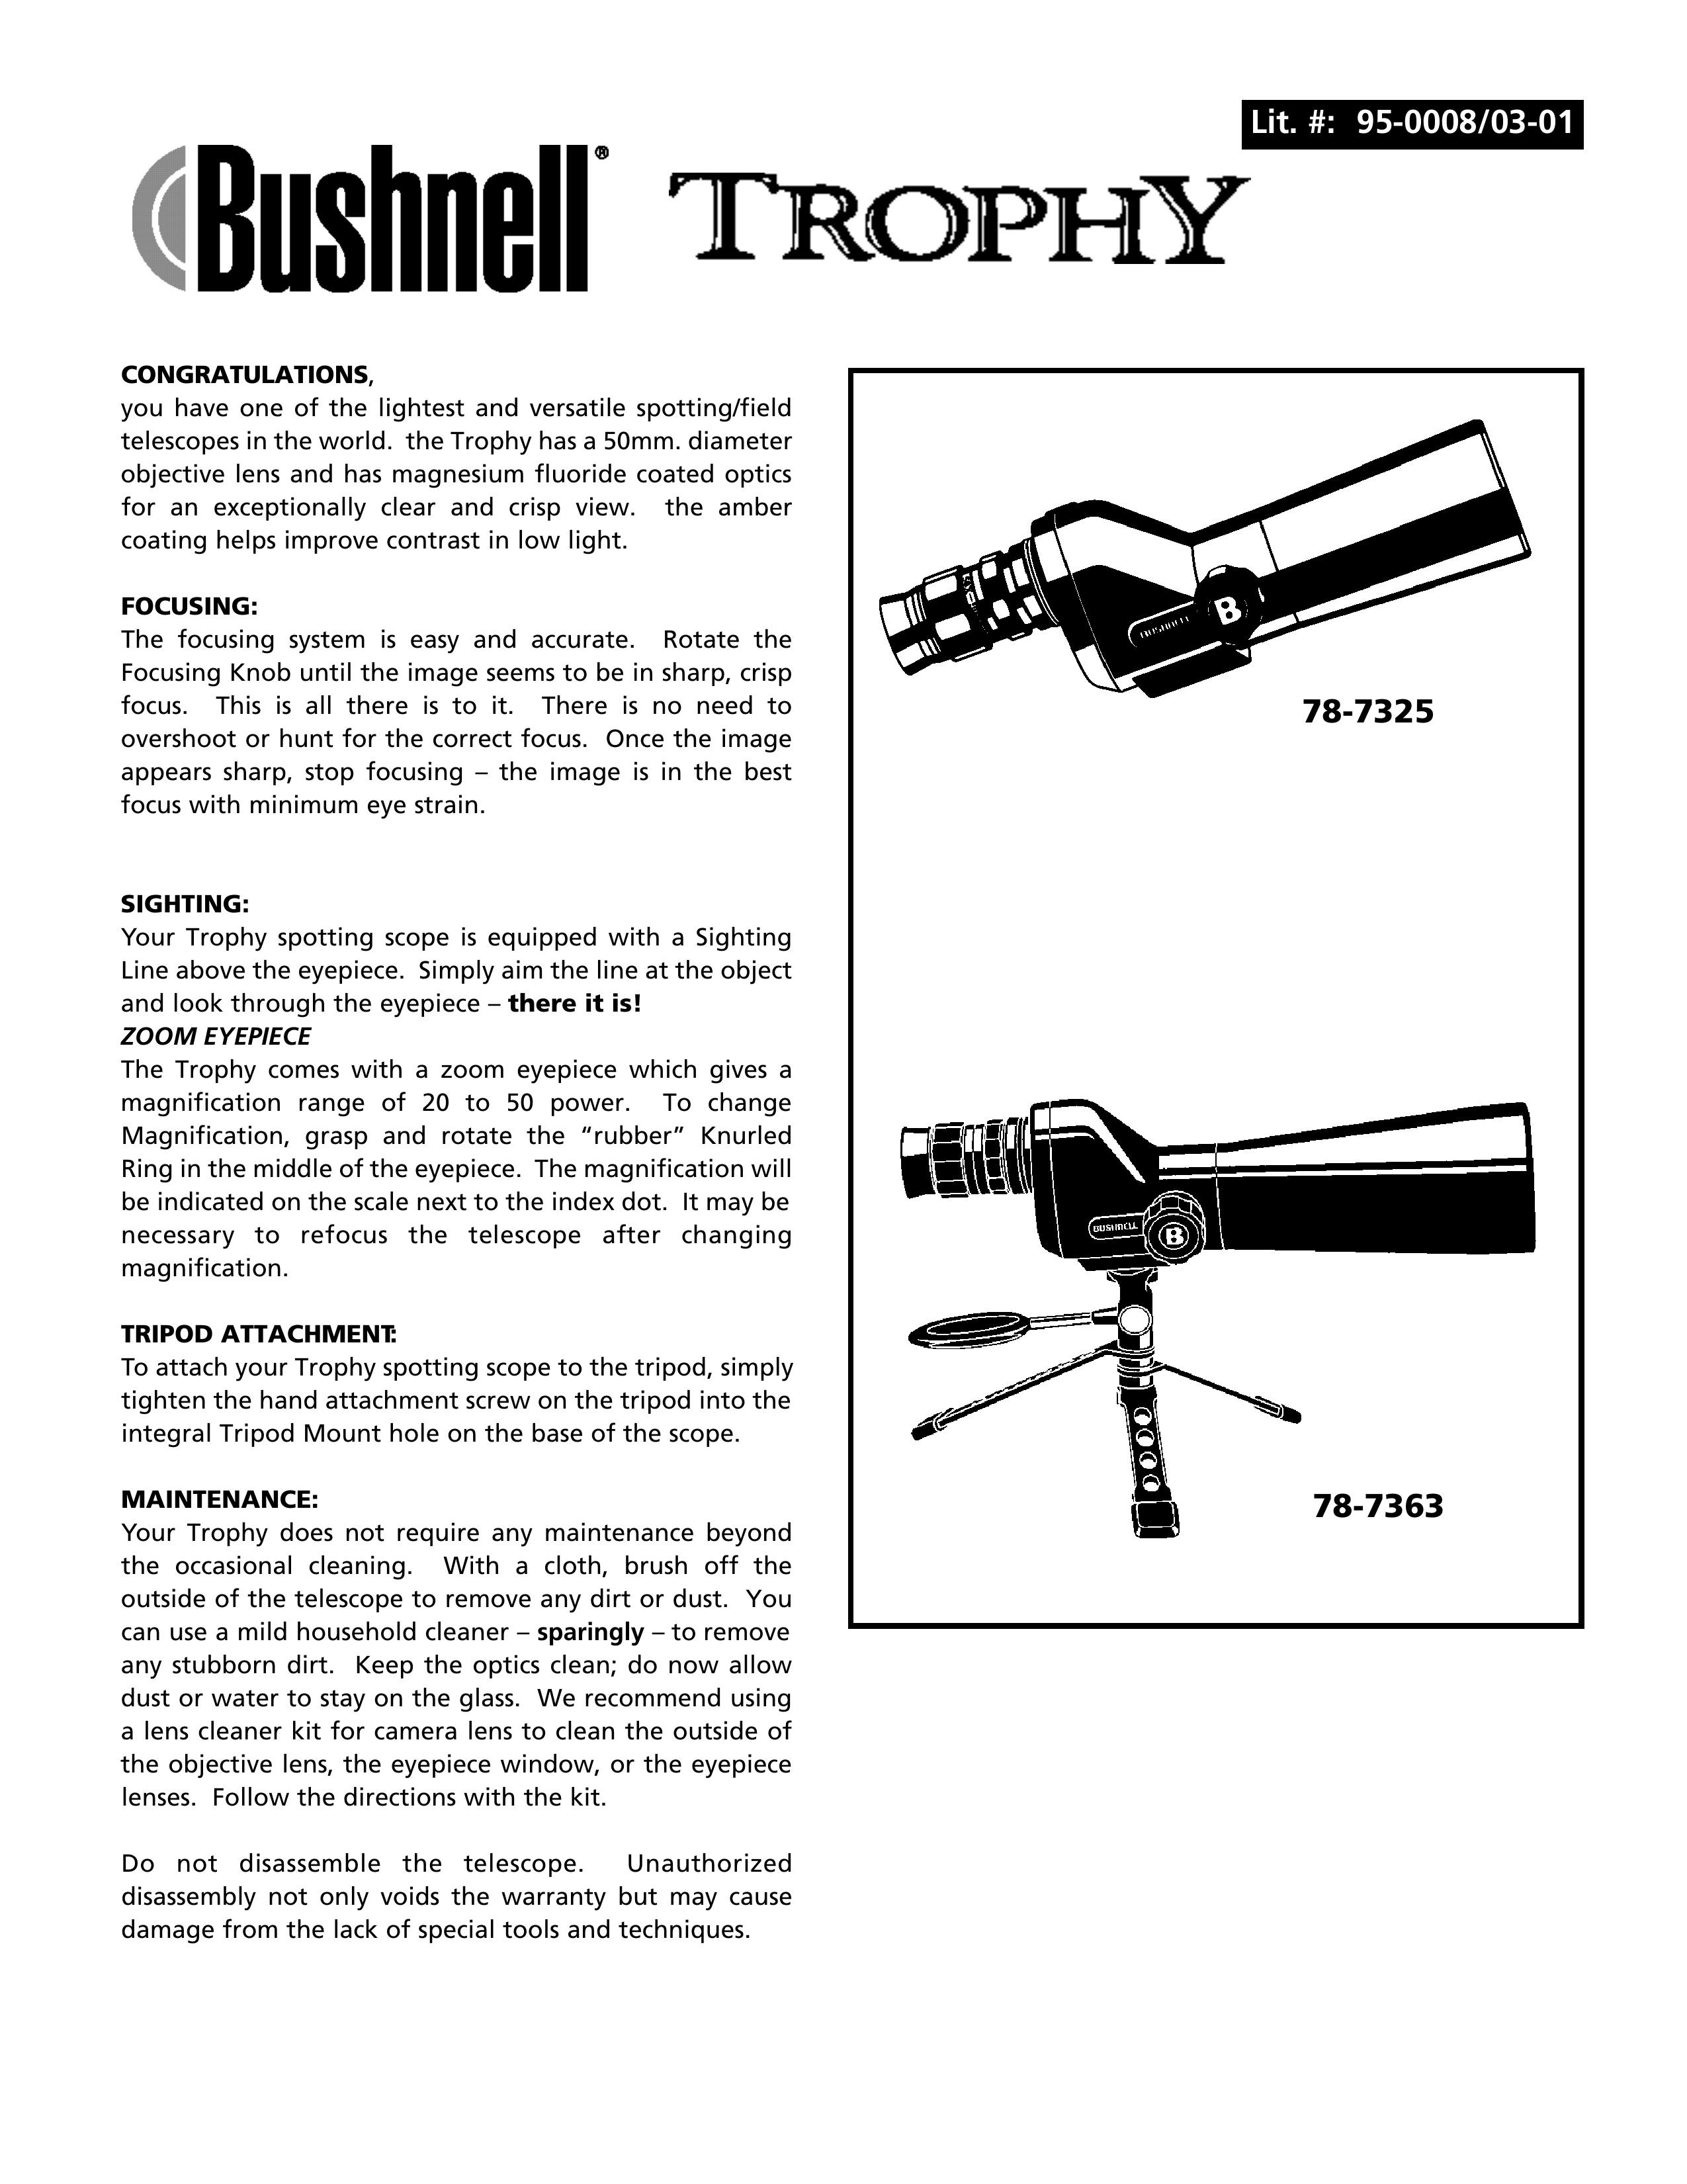 Bushnell 78-7363 Telescope User Manual